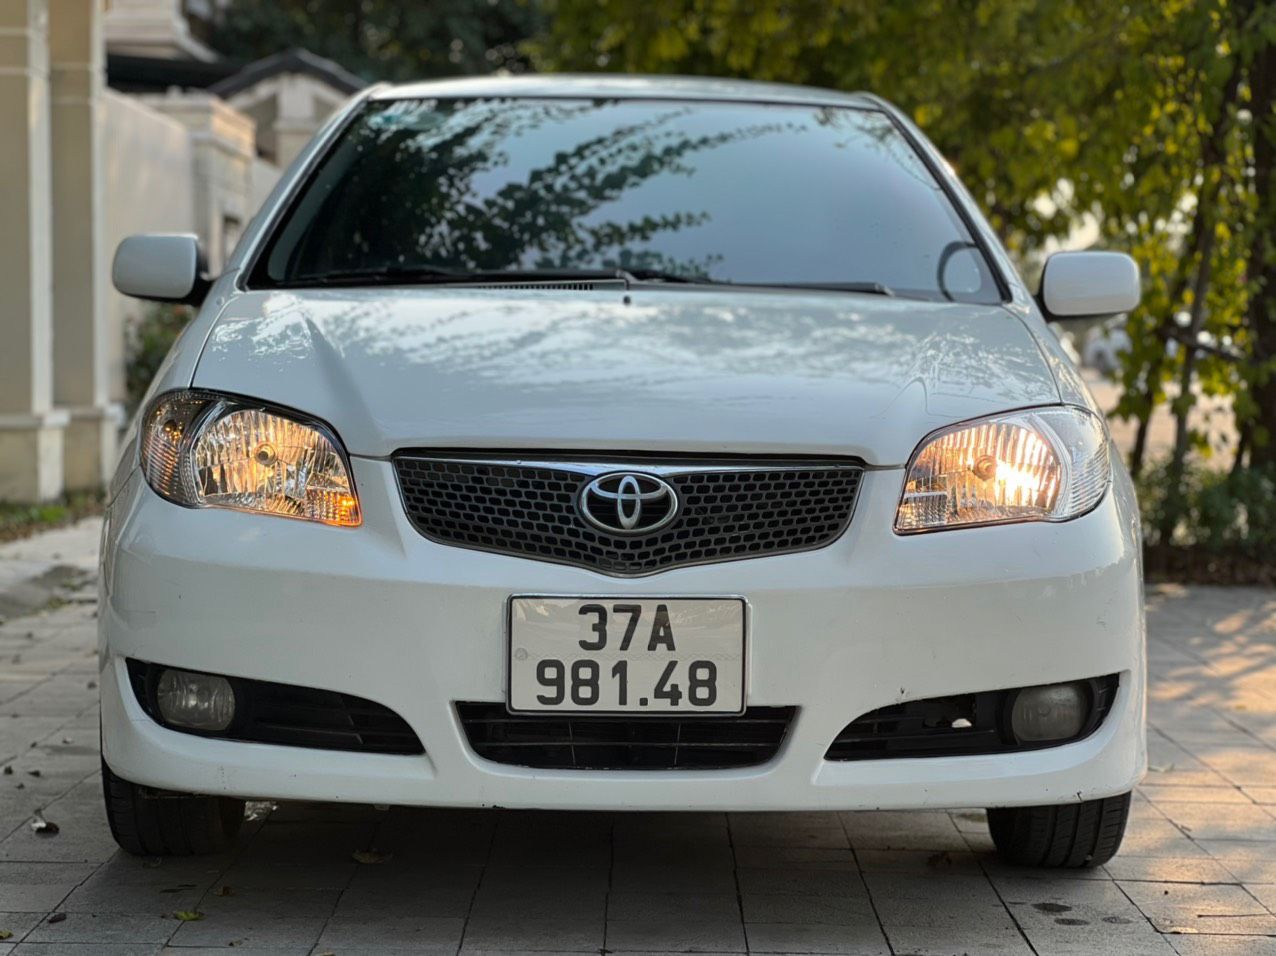 Giá bán xe Toyota Vios cũ kinh nghiệm mua xe Vios cũ